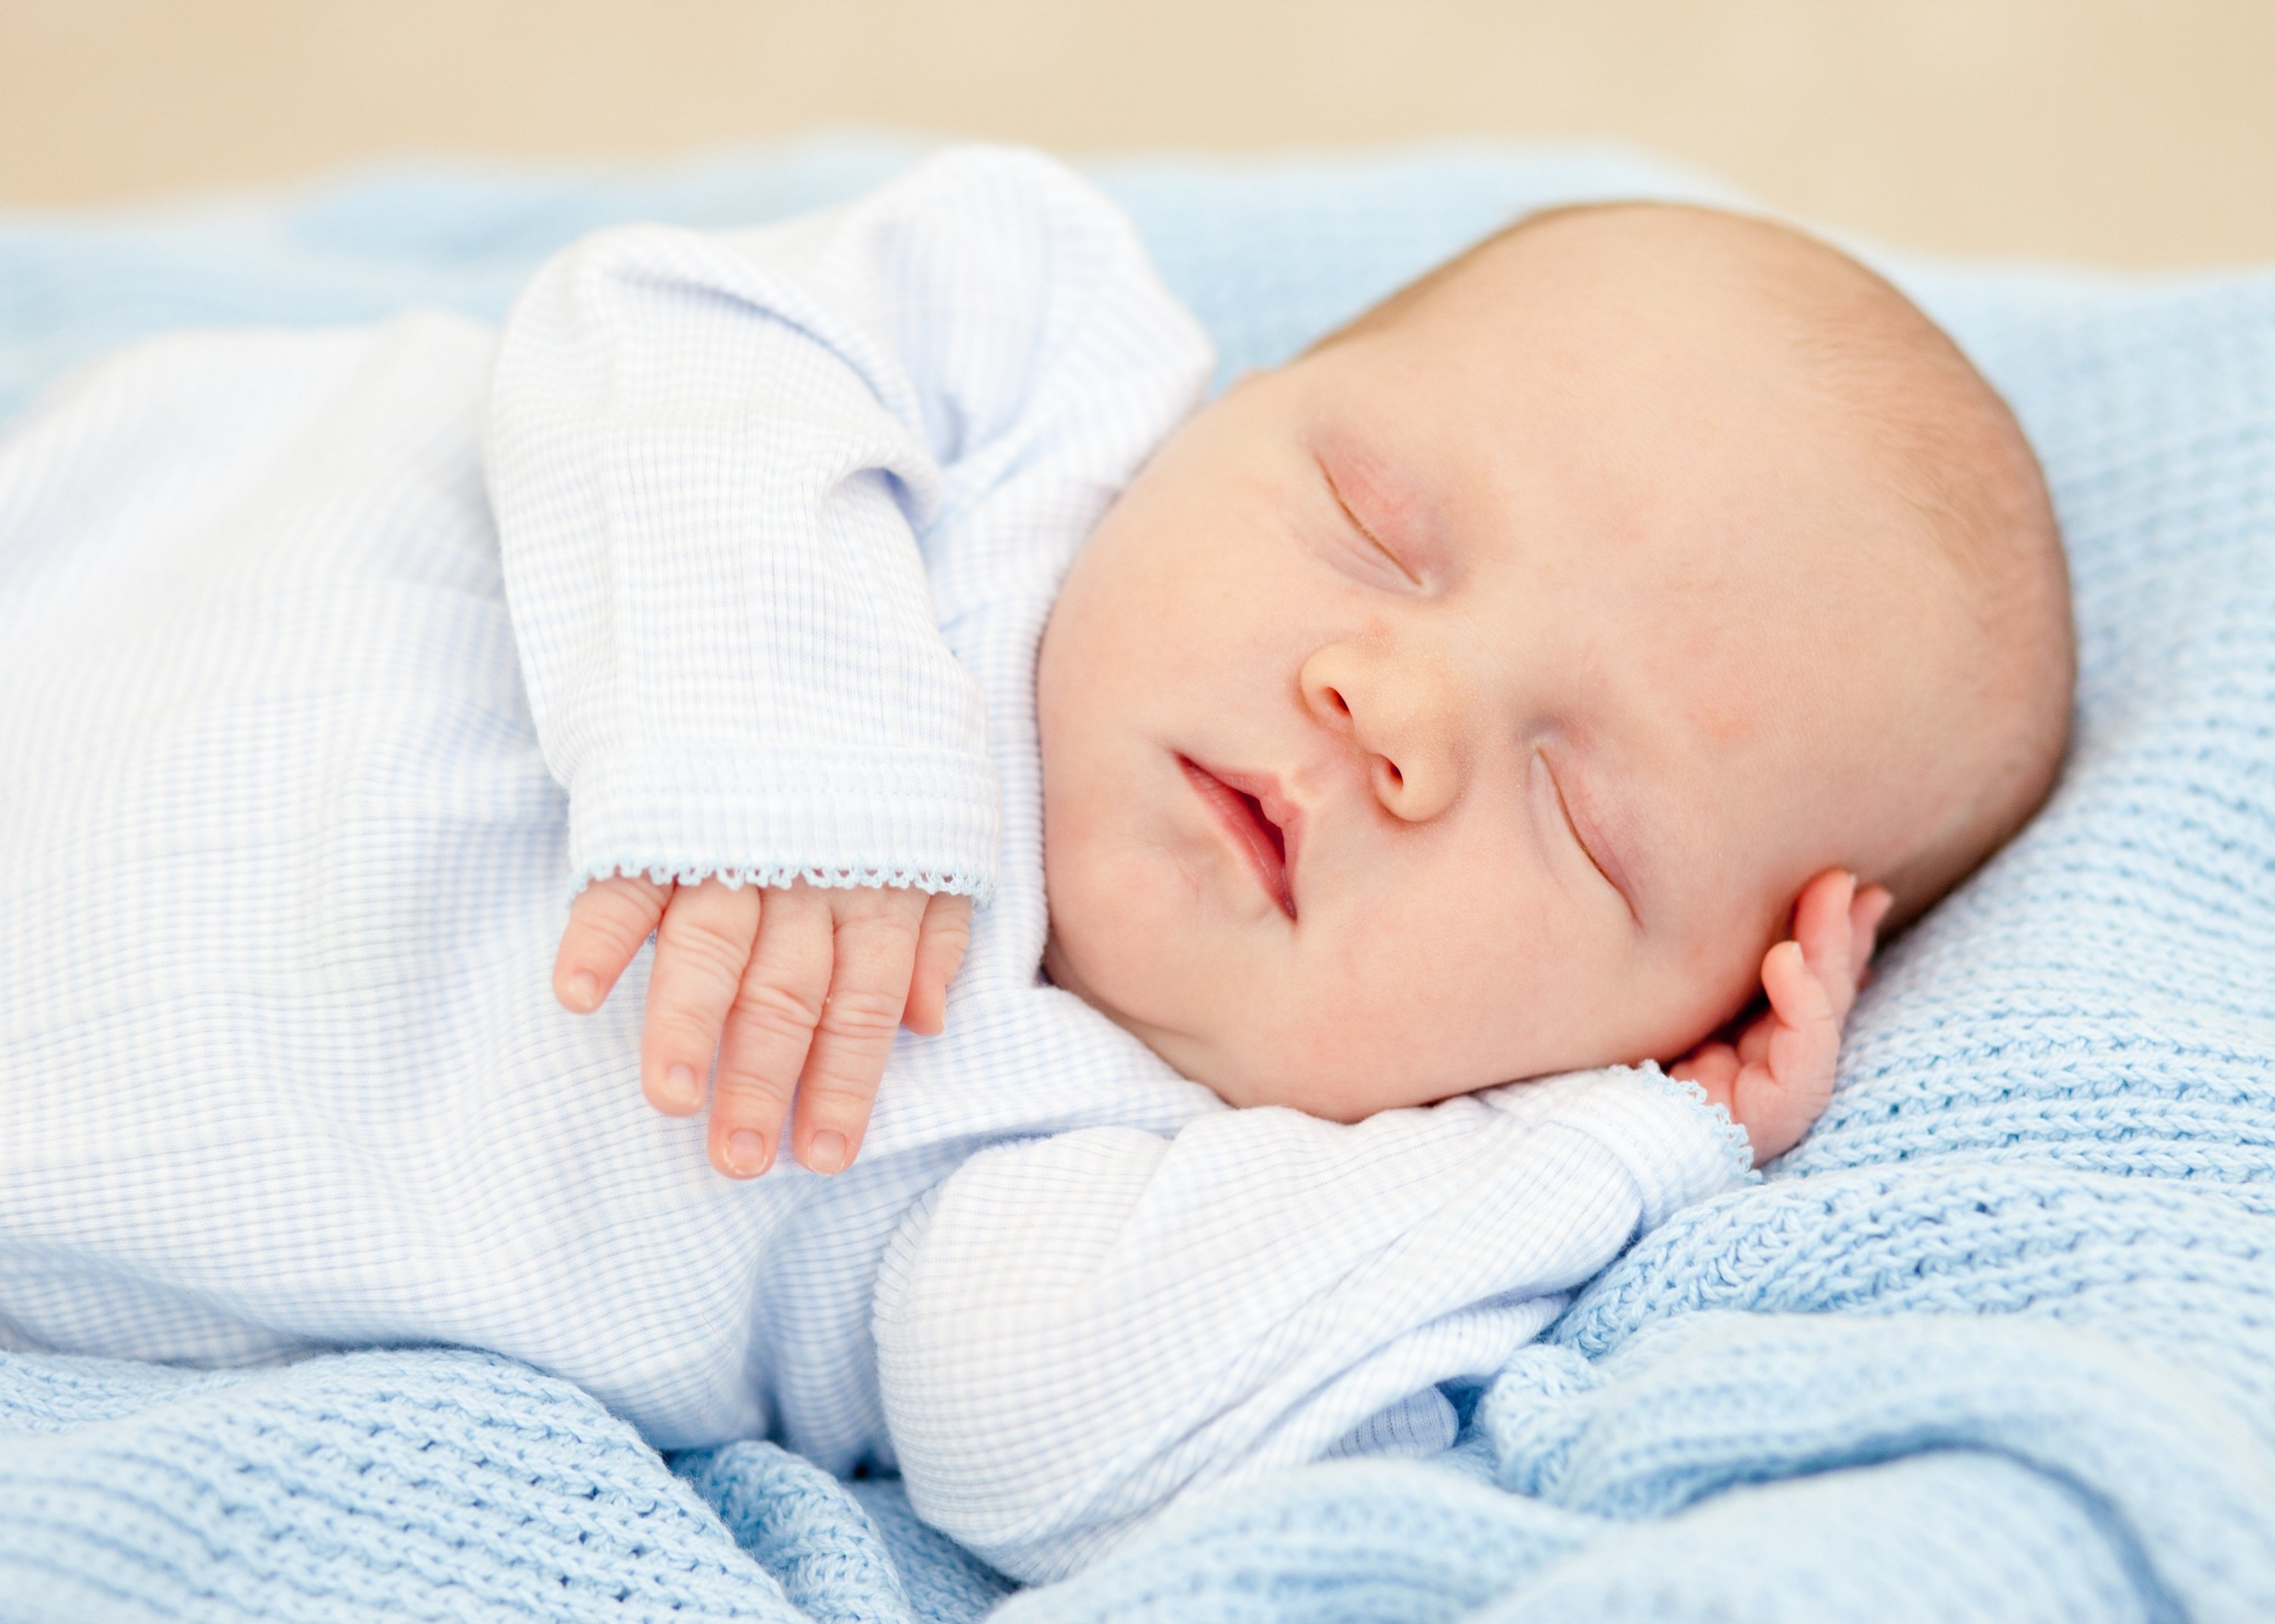 モバイル用の男の子の壁紙,子,赤ちゃん,写真,睡眠,眠っている赤ちゃん